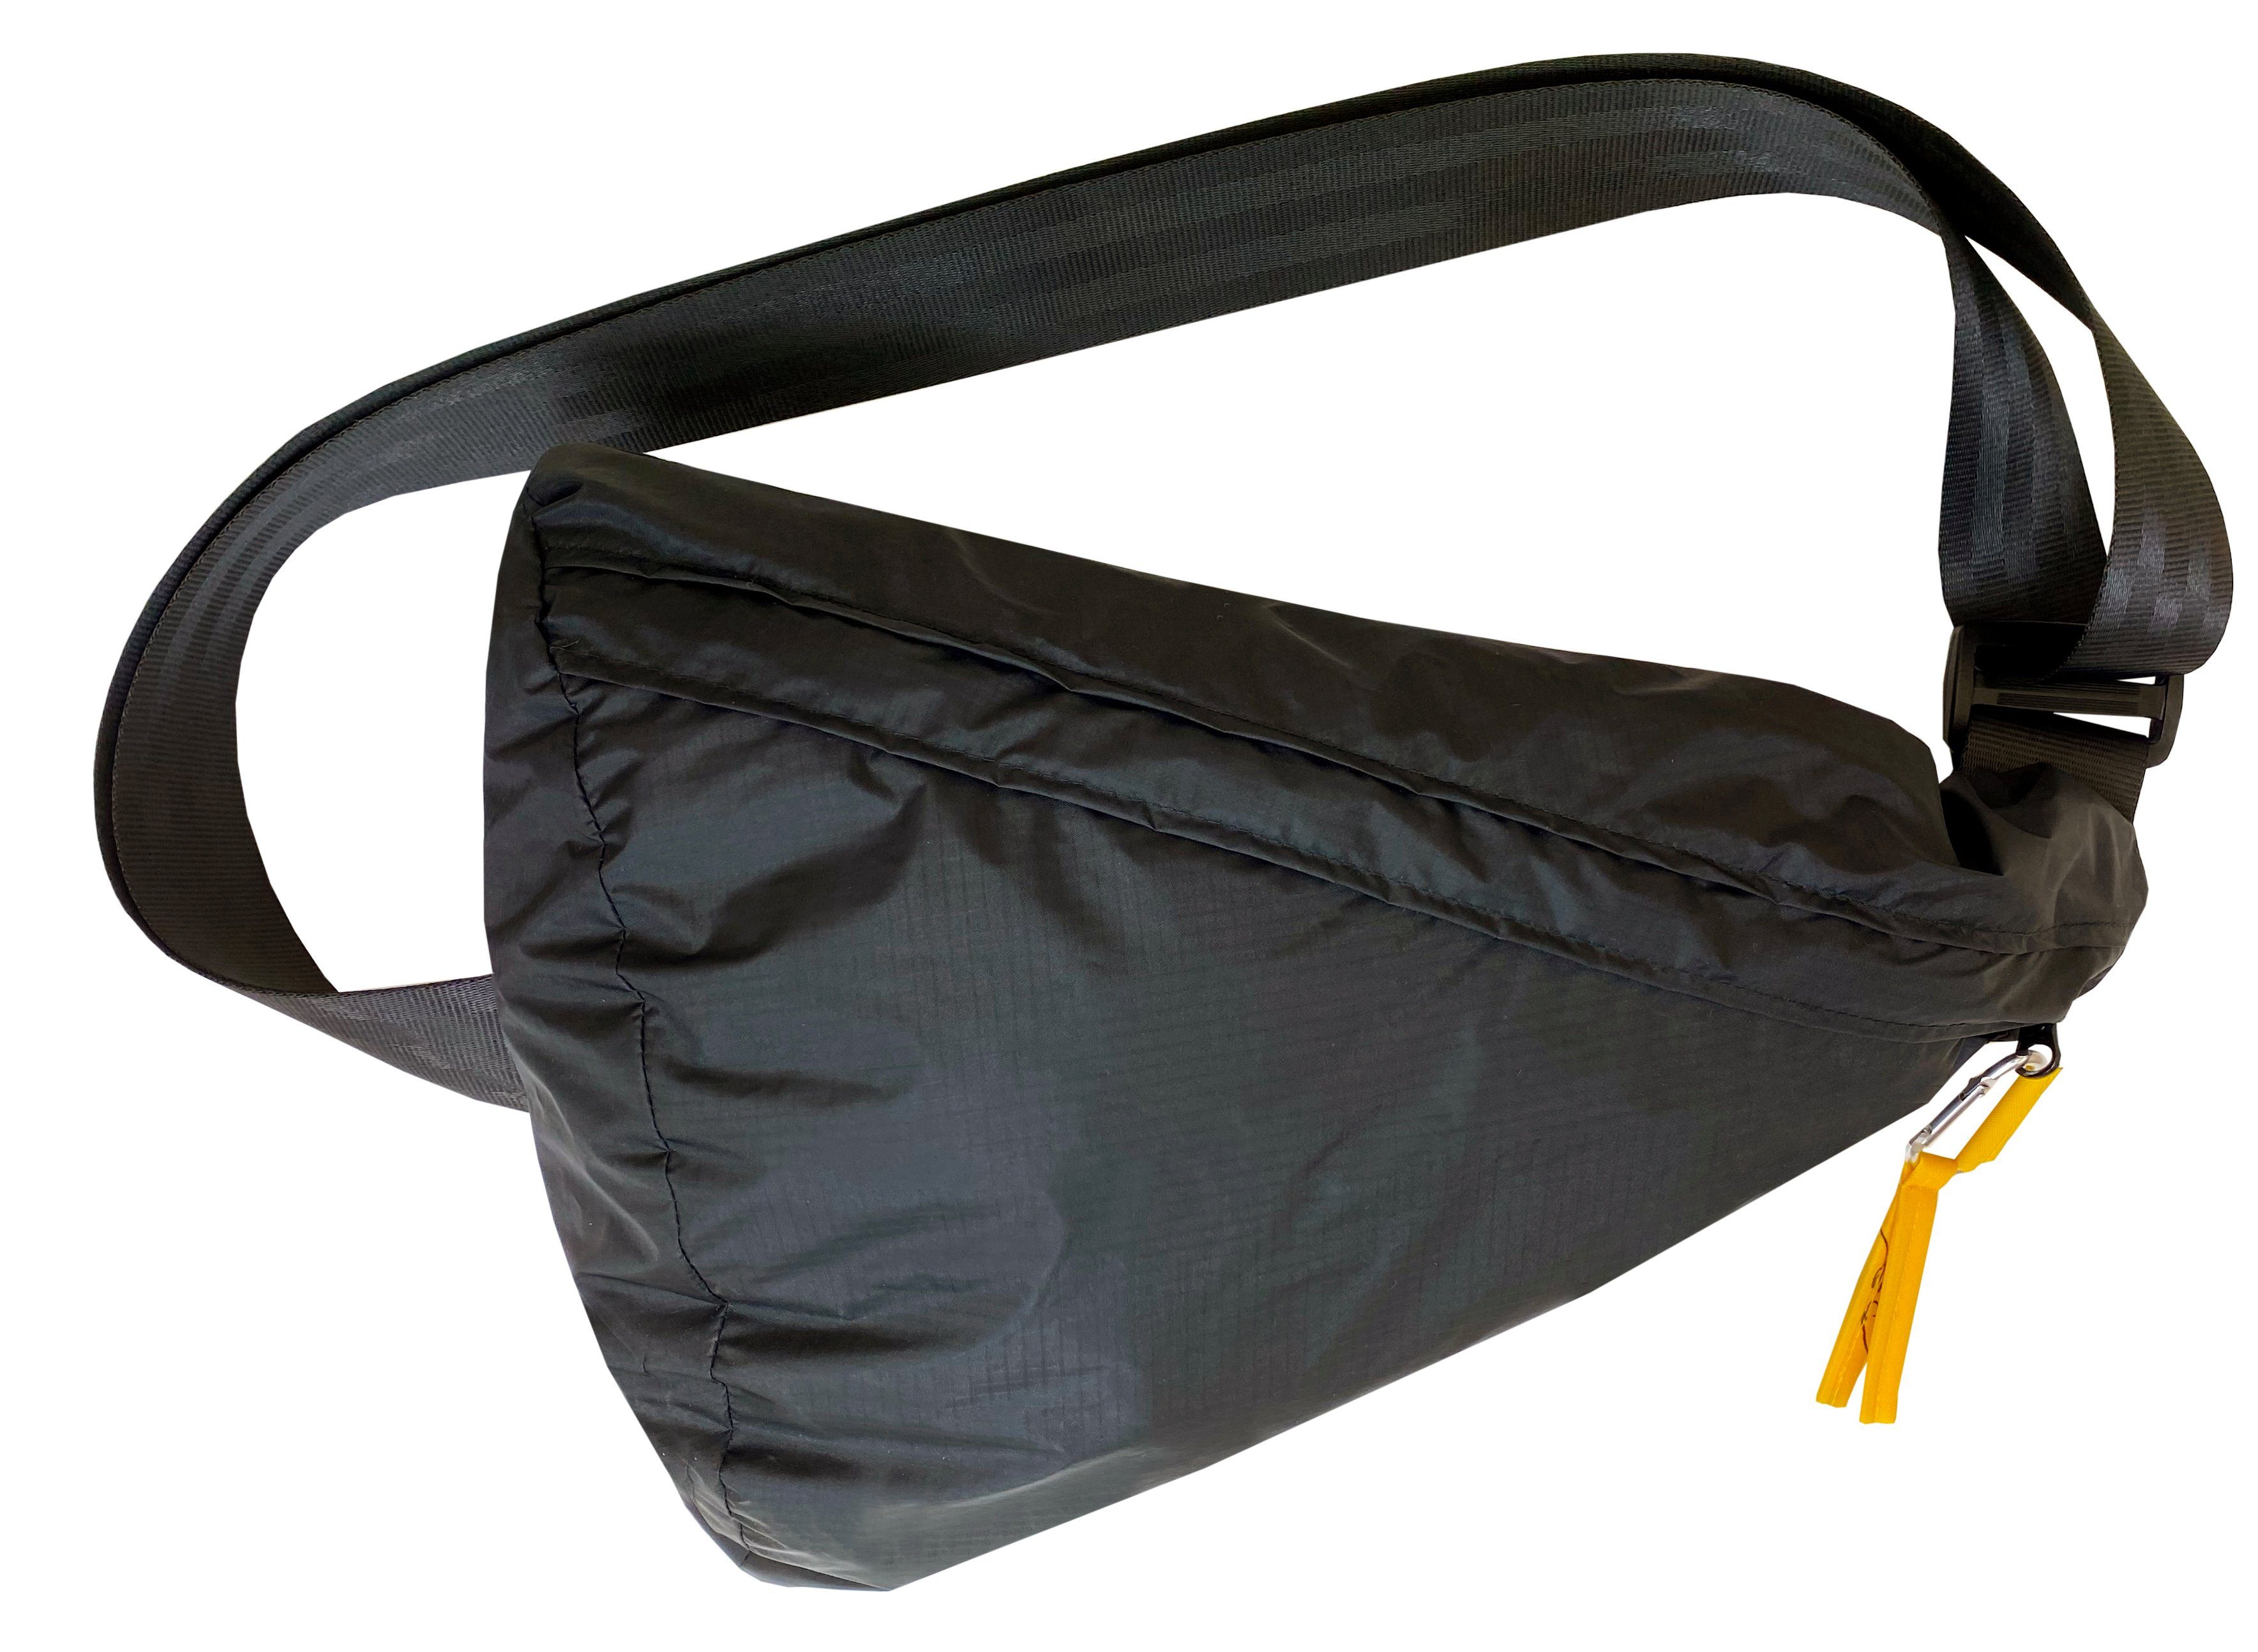 Umhängetasche to Life Bravo Bag, Bag Triangle praktischen im Design